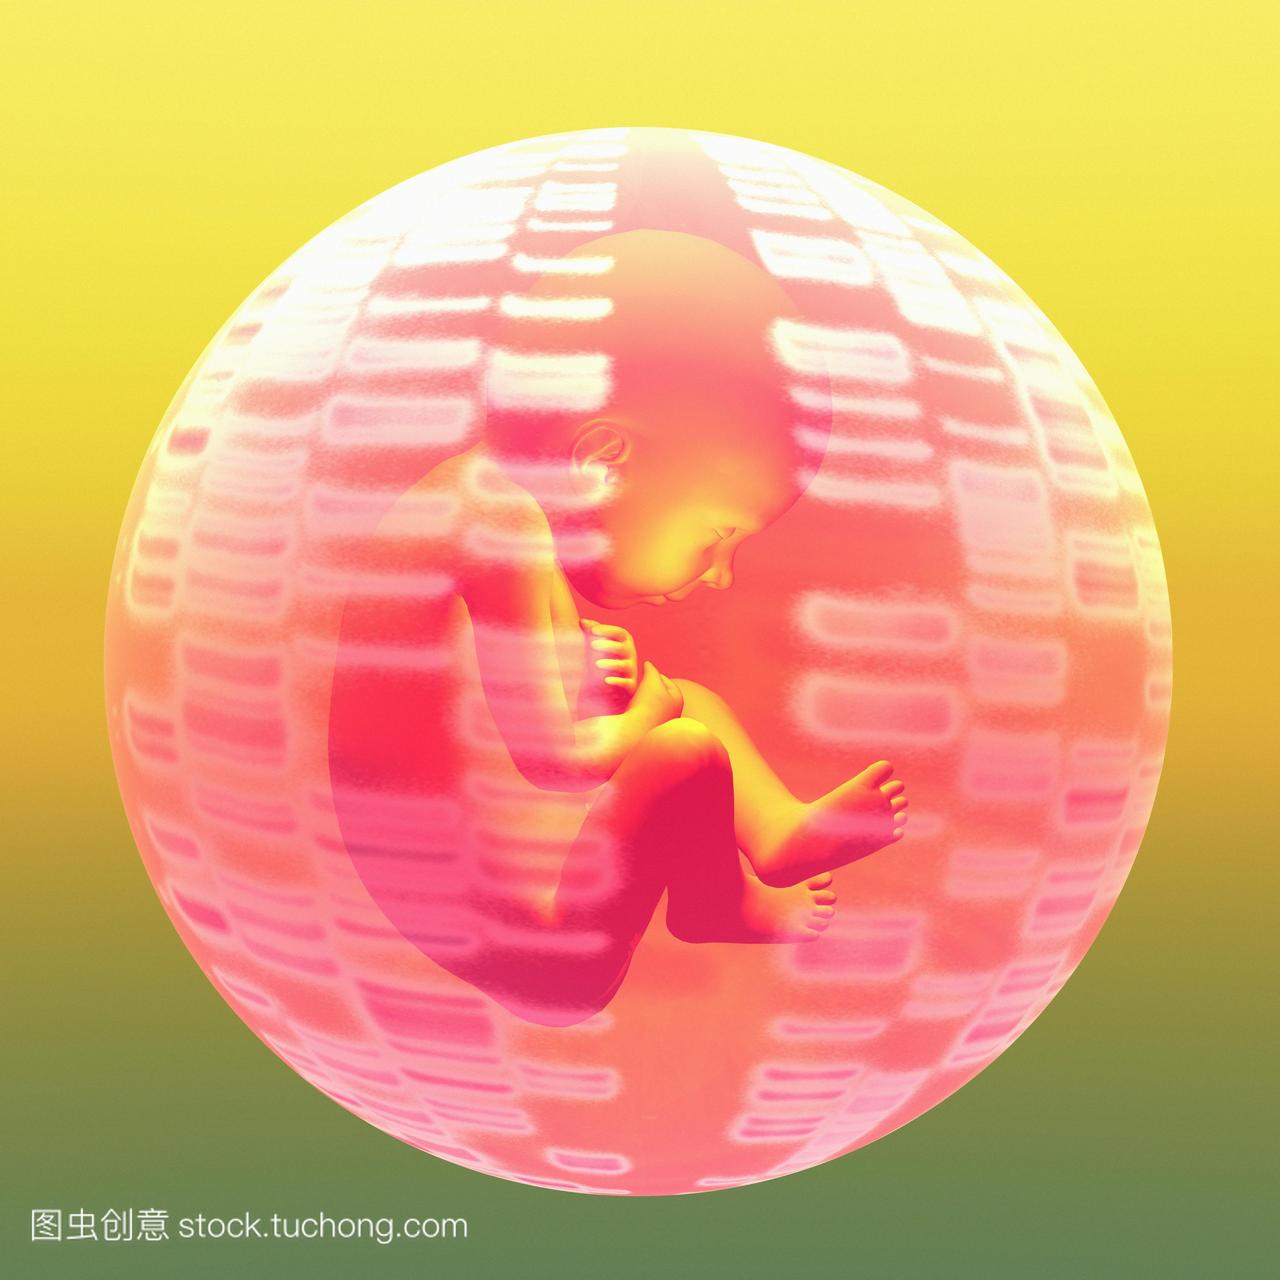 胎儿dna放射自显影图和胎儿的概念电脑绘图的